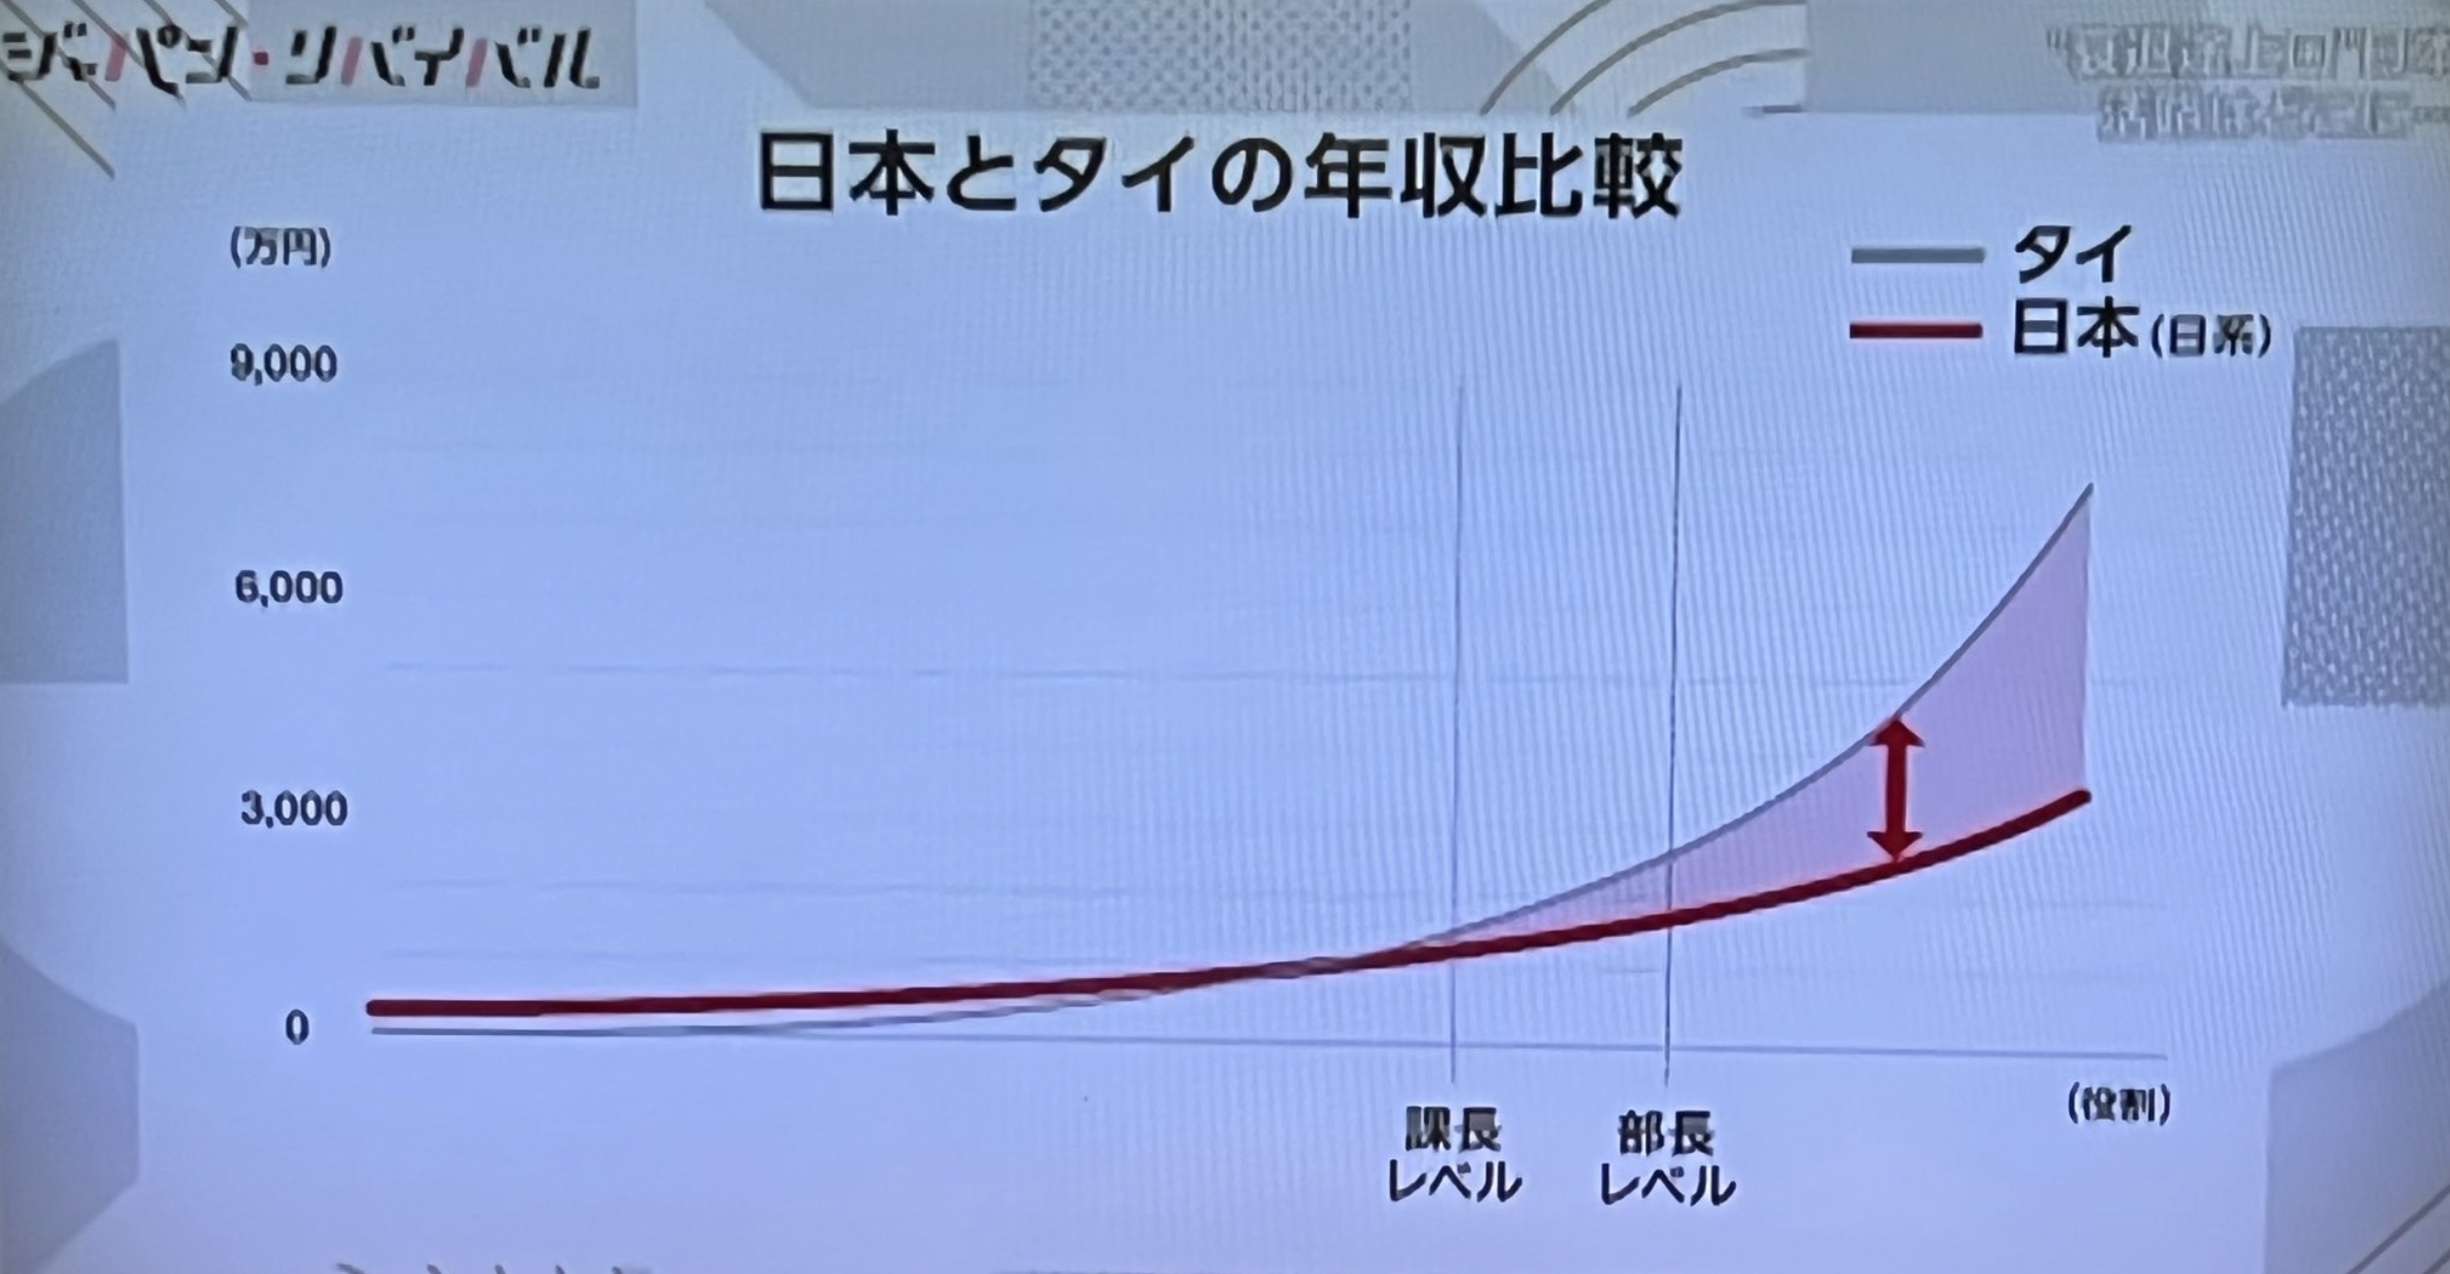 ついに来た、日本人がタイ人に年収を追い抜かれる日　課長レベルを超えると差が開く一方 日本は衰退途上国だってさ…